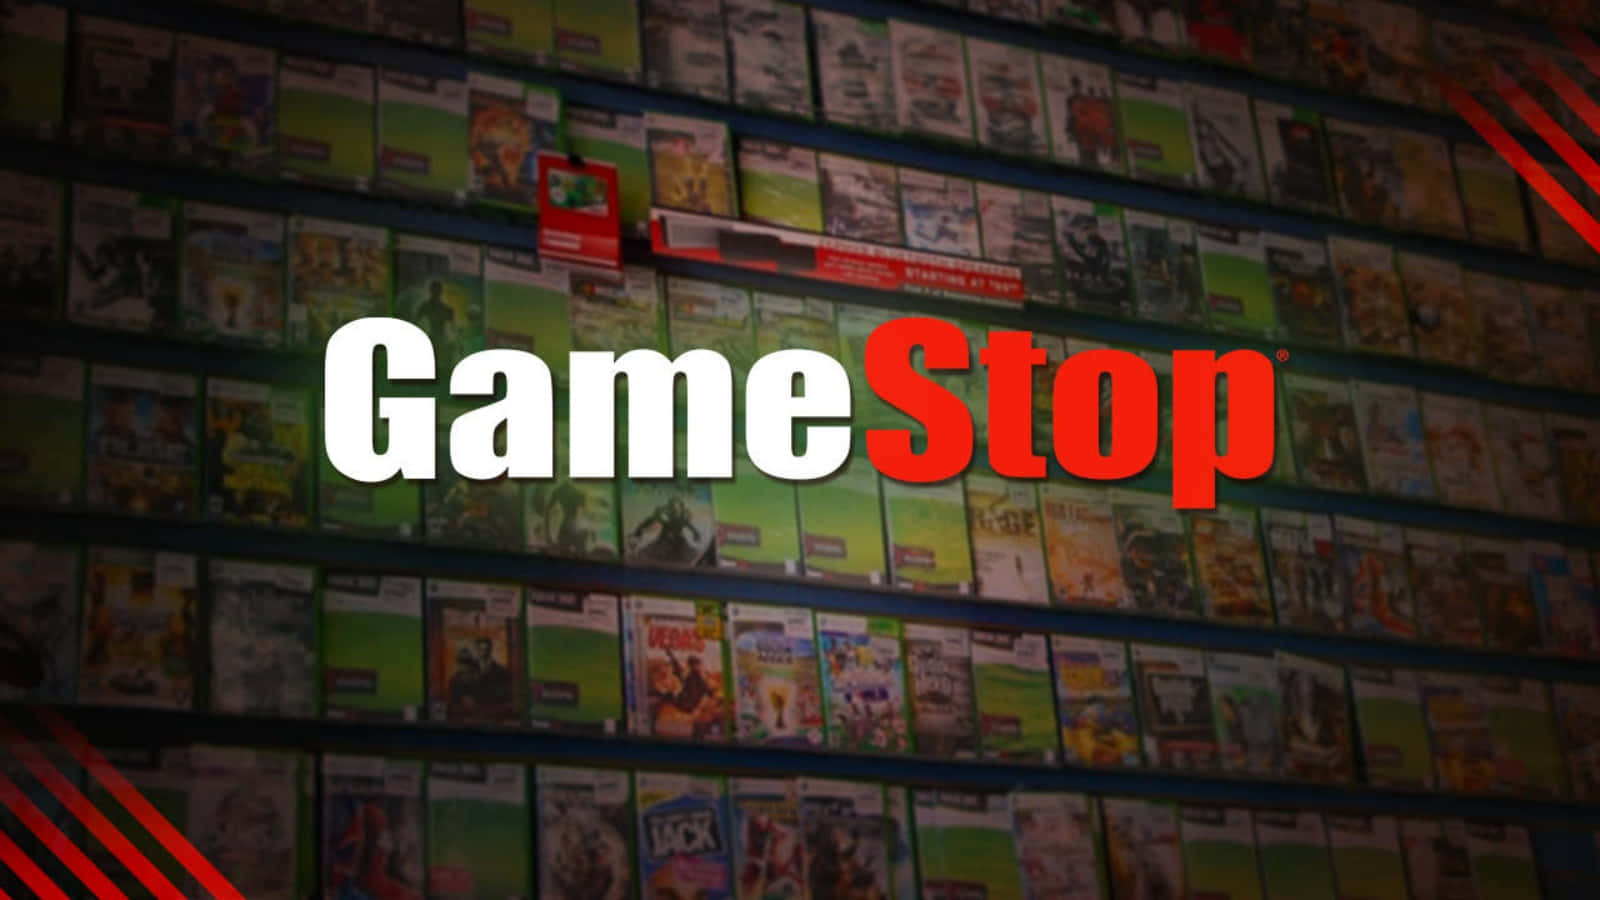 Holensie Sich Einen Vorteil Beim Gaming, Indem Sie Bei Ihrem Örtlichen Gamestop Einkaufen!